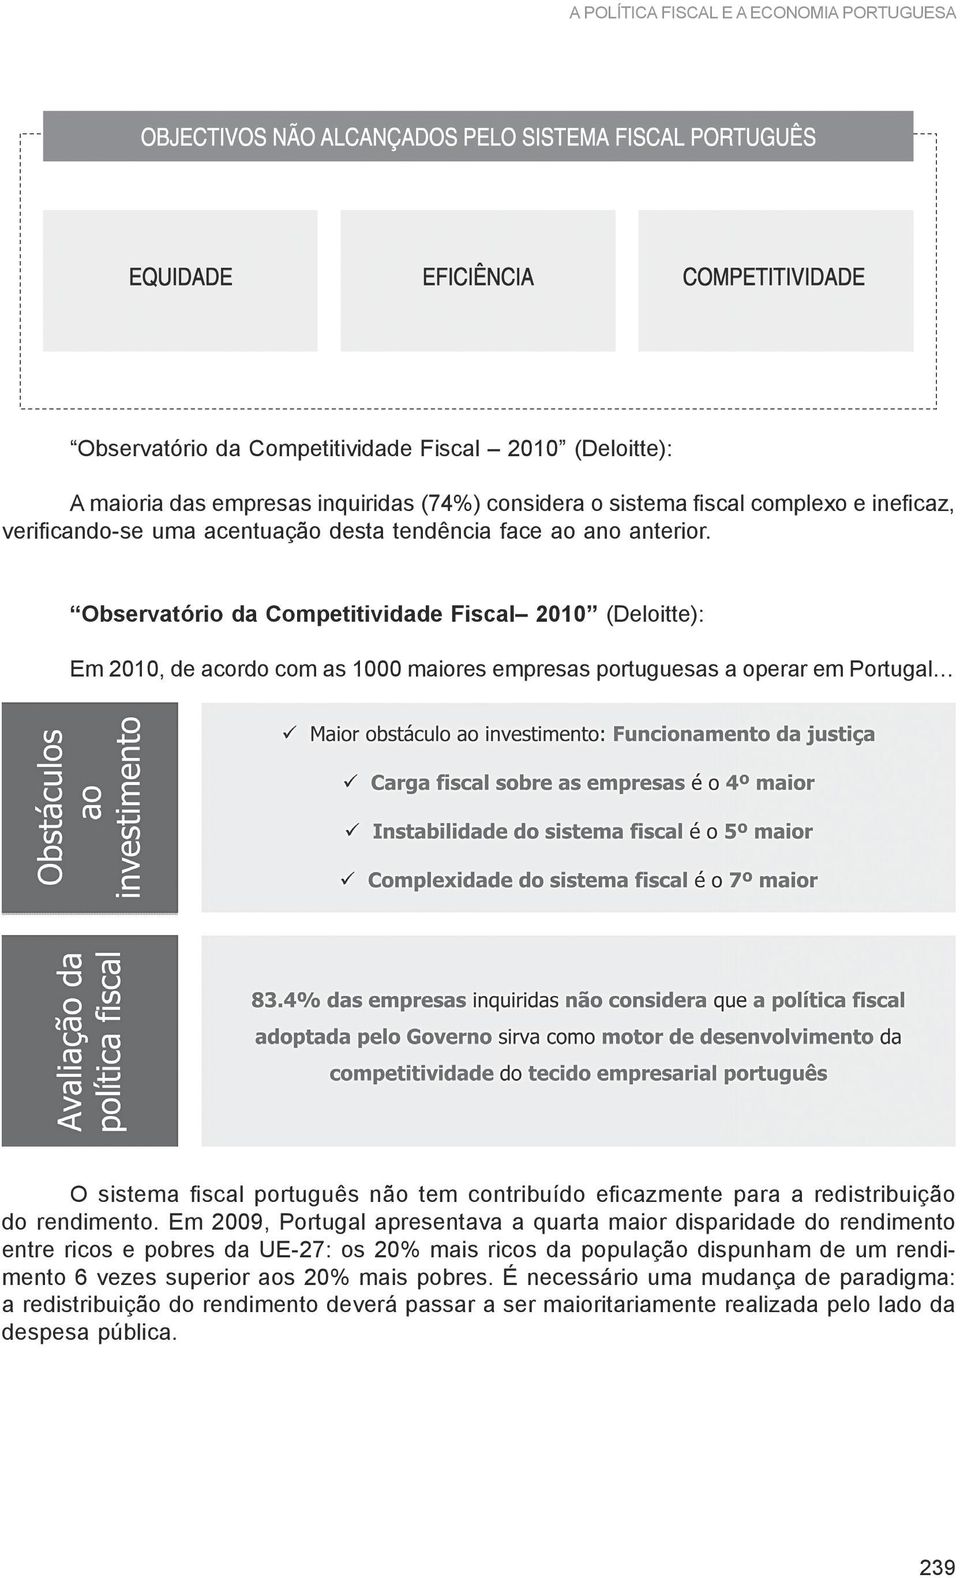 Observatório da Competitividade Fiscal 2010 (Deloitte): Em 2010, de acordo com as 1000 maiores empresas portuguesas a operar em Portugal O sistema fiscal português não tem contribuído eficazmente